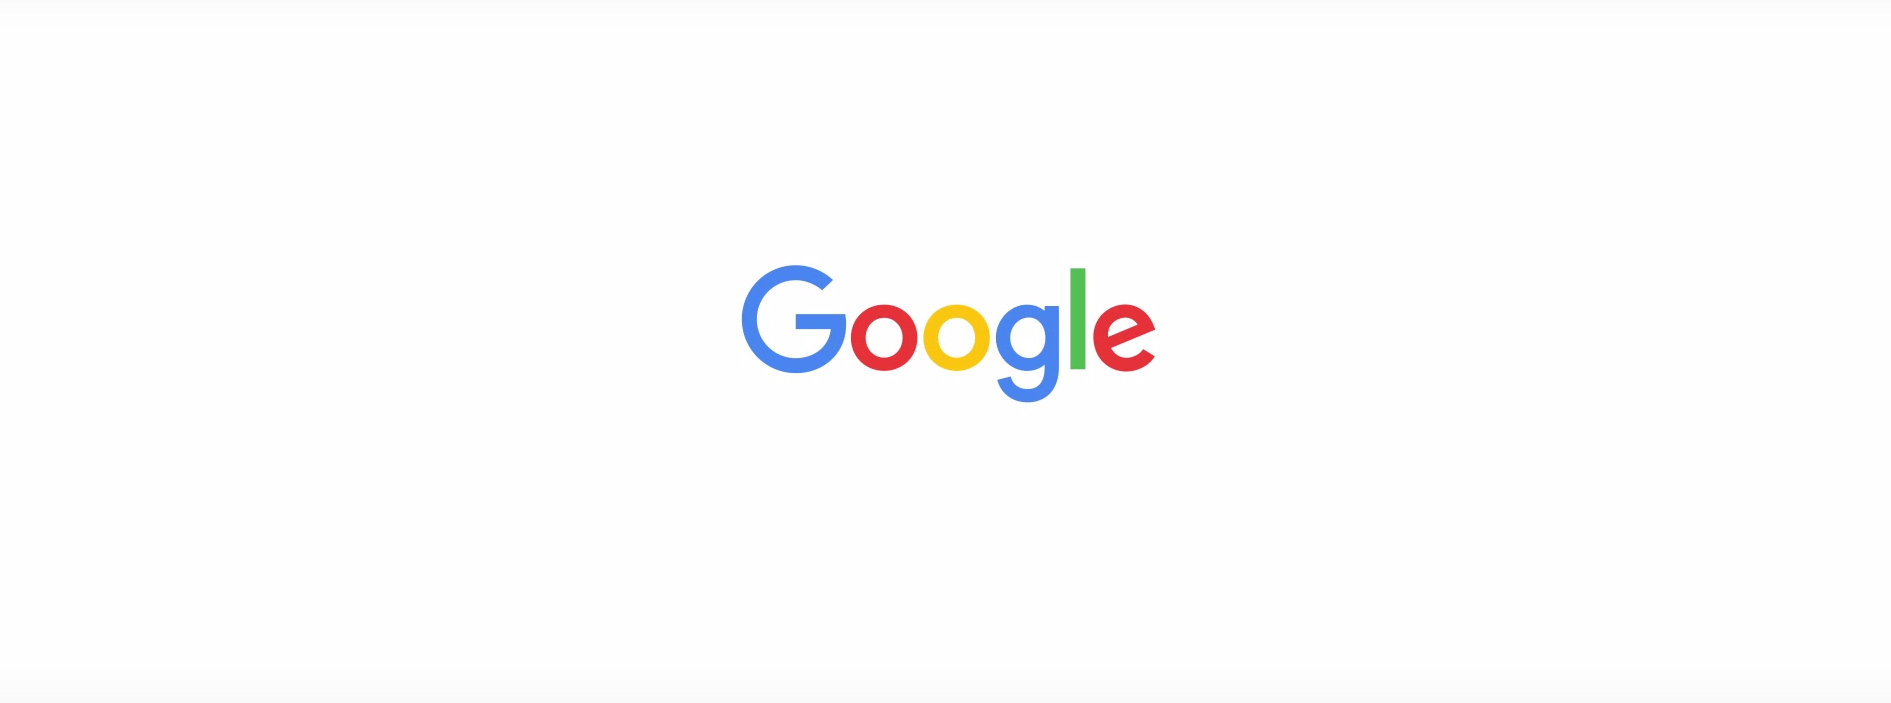 دزد های اطلاعاتی - Google